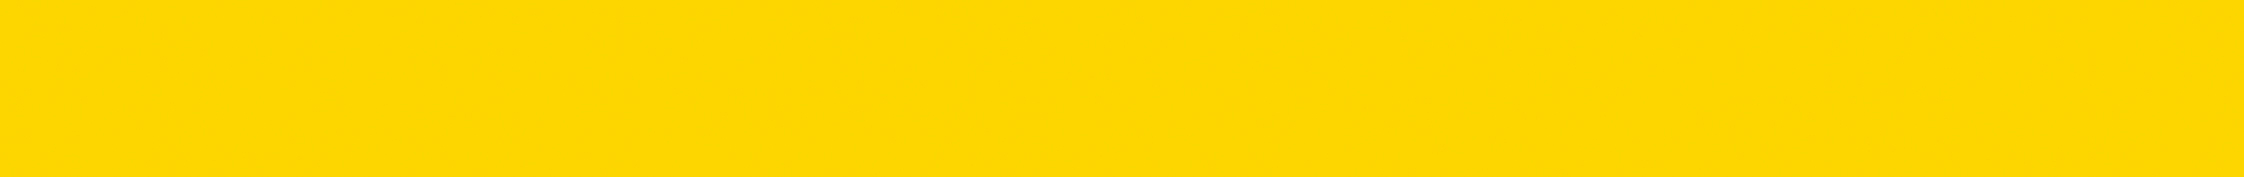 URSUS Masking Tape 15mmx10m 59050001 20g, 01 jaune 20g, 01 jaune